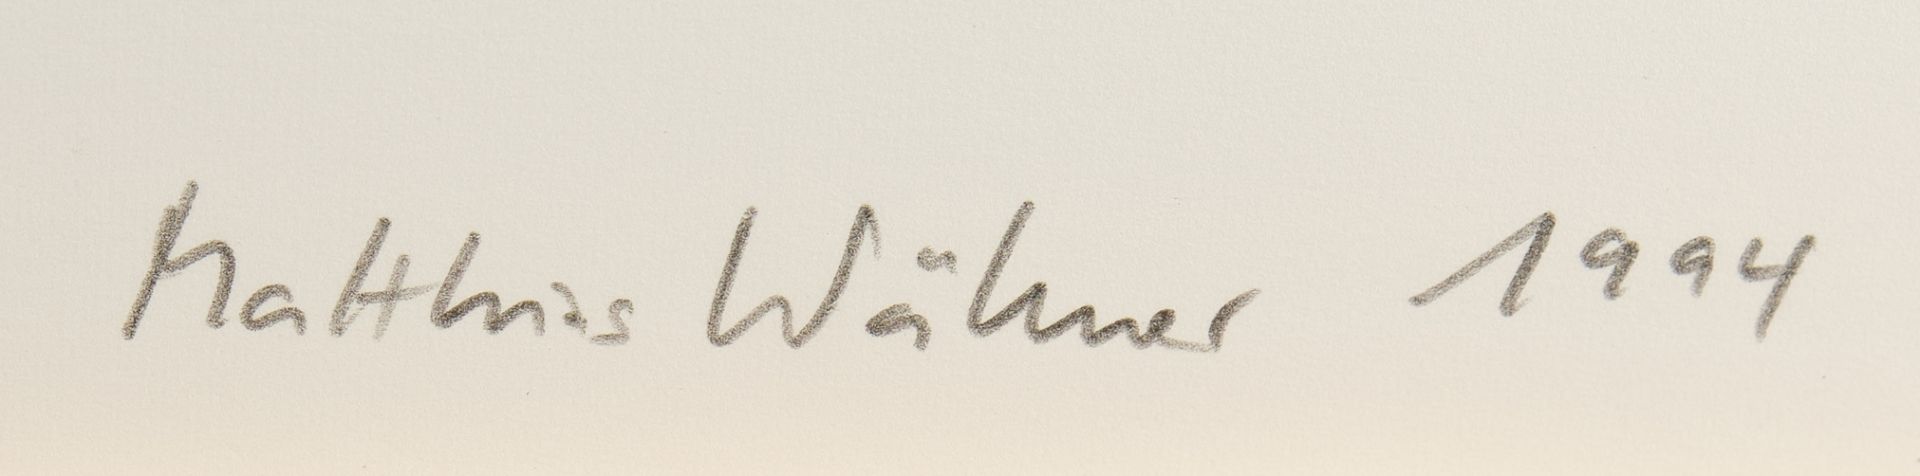 Wähner, Matthias (geb. 1953 Berlin), - Bild 3 aus 5